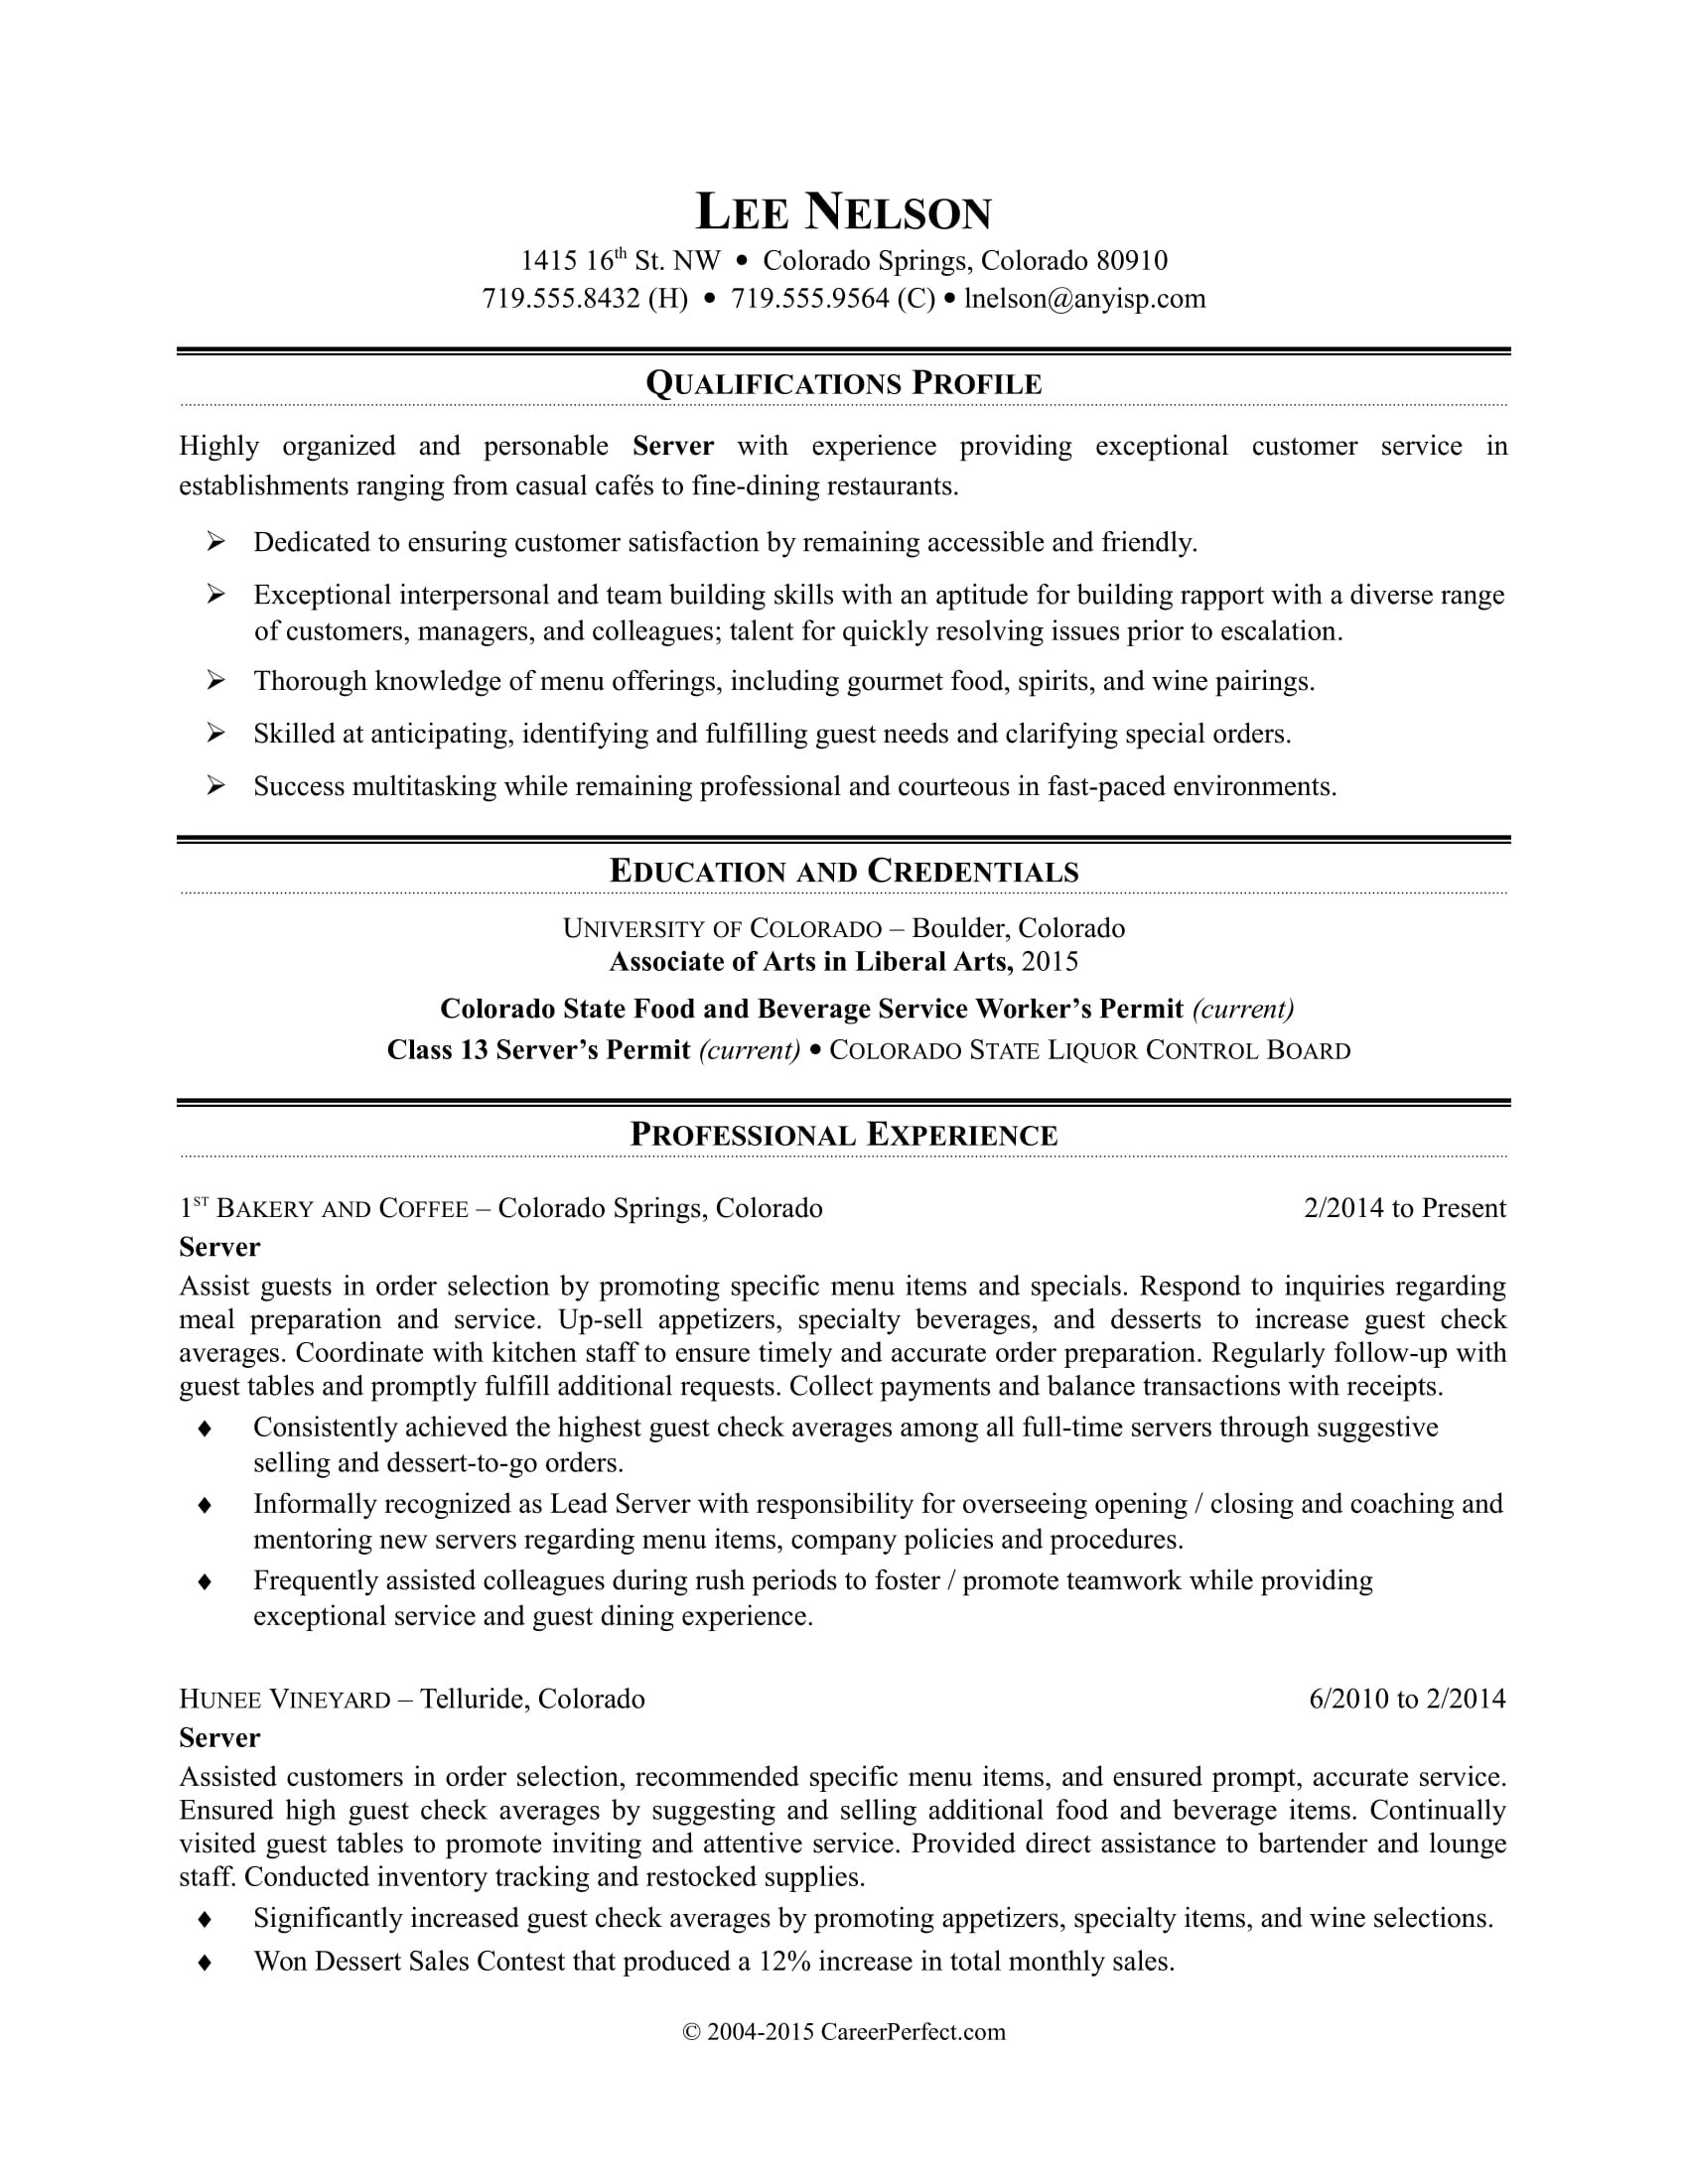 Resume format Sample for Restaurant Jobs Restaurant Server Resume Sample Monster.com